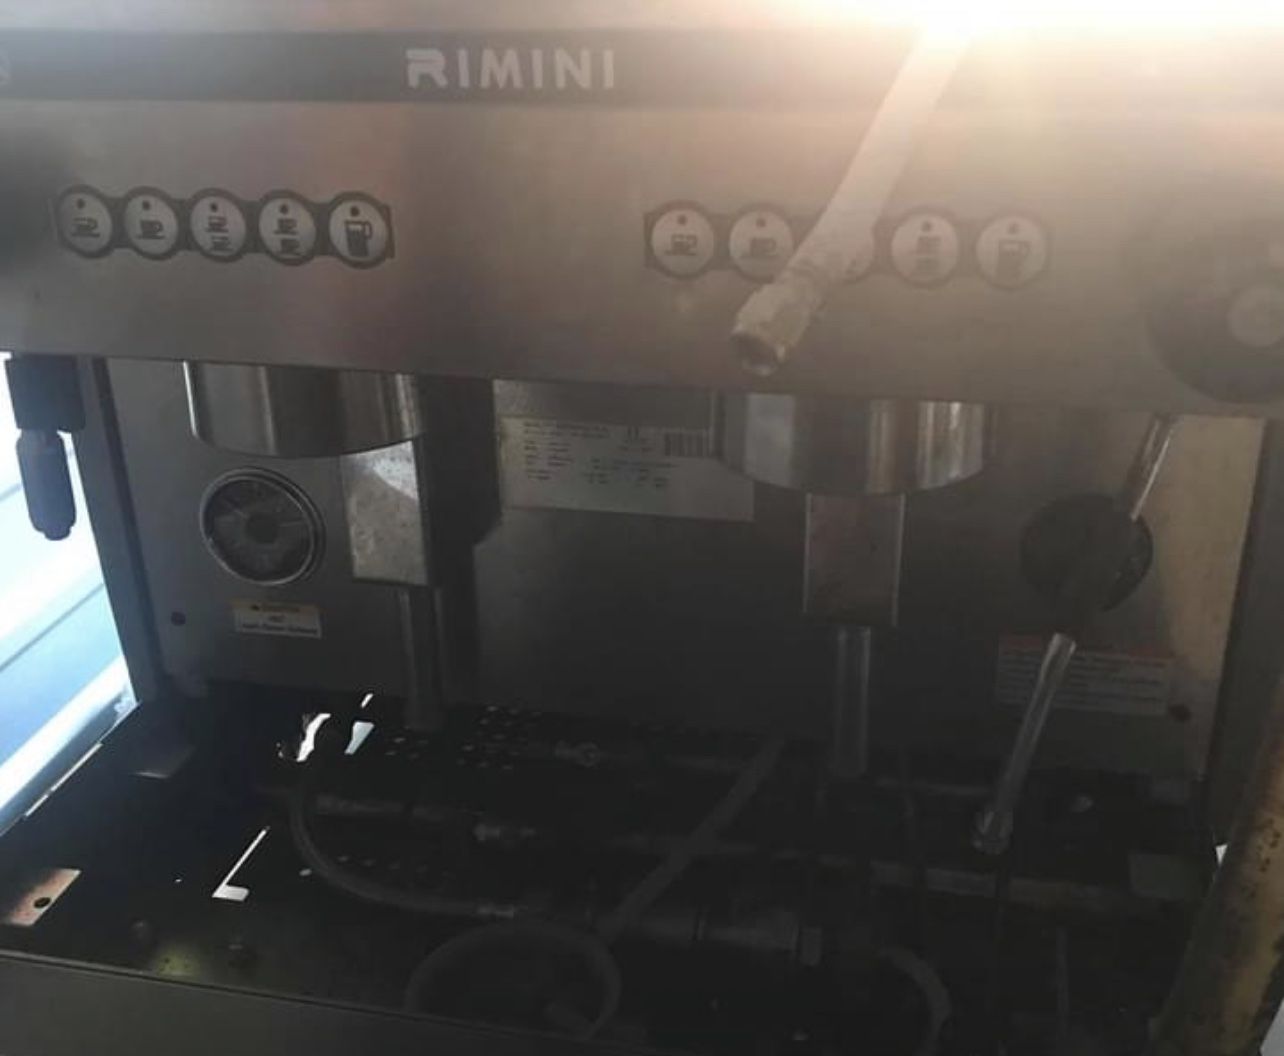 FUTURMAT Commercial Espresso Machine 